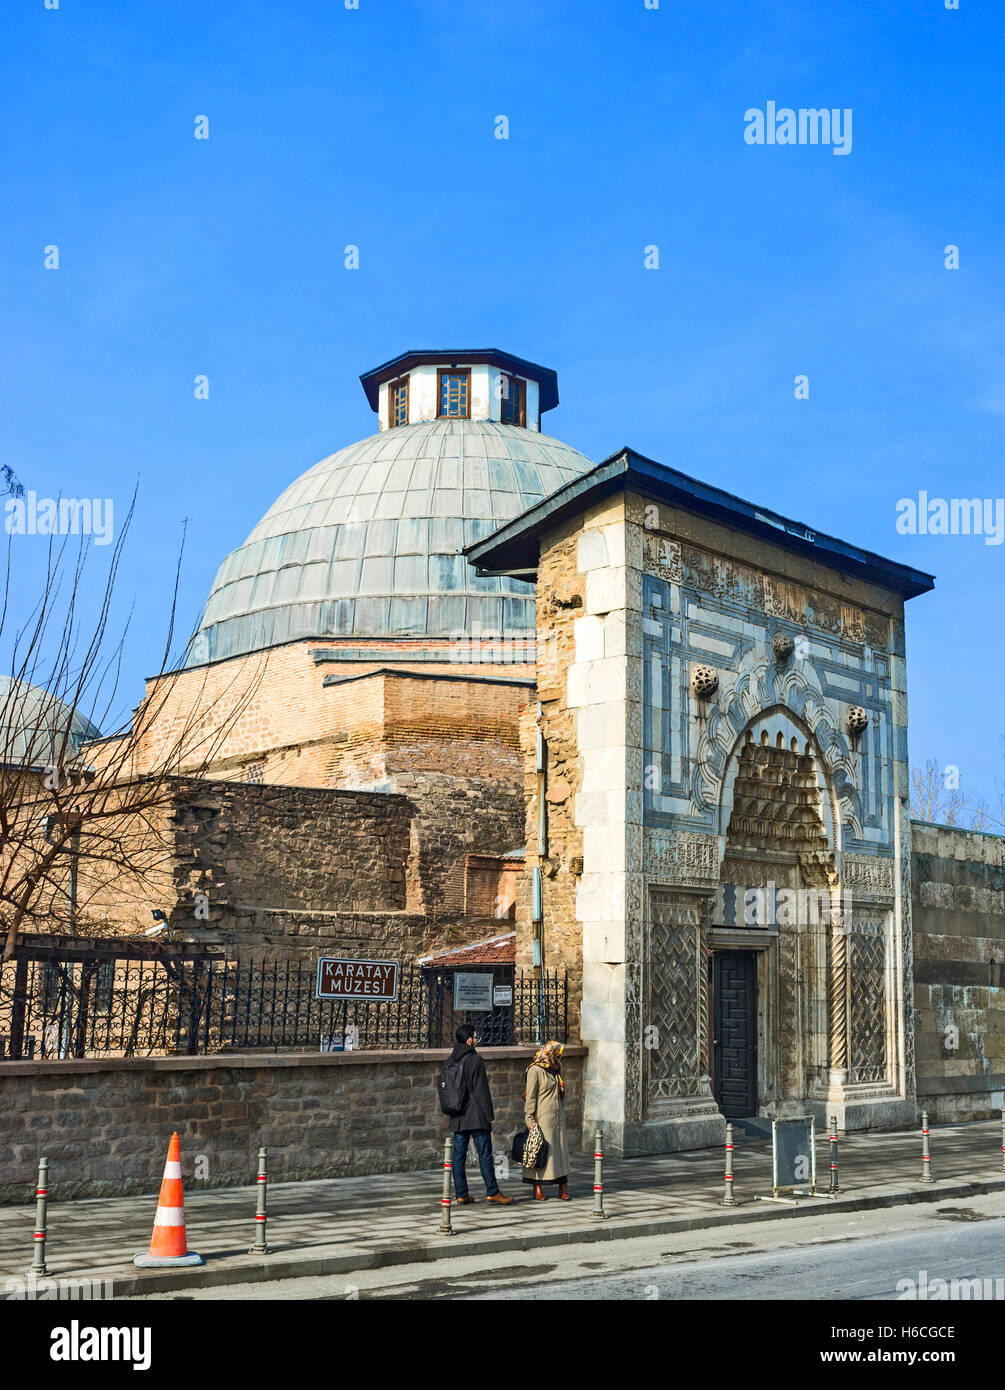 Las puertas de piedra tallada de las madrazas Karatay decoradas con motivos  geométricos en estilo islámico, Konya, Turquía Fotografía de stock - Alamy